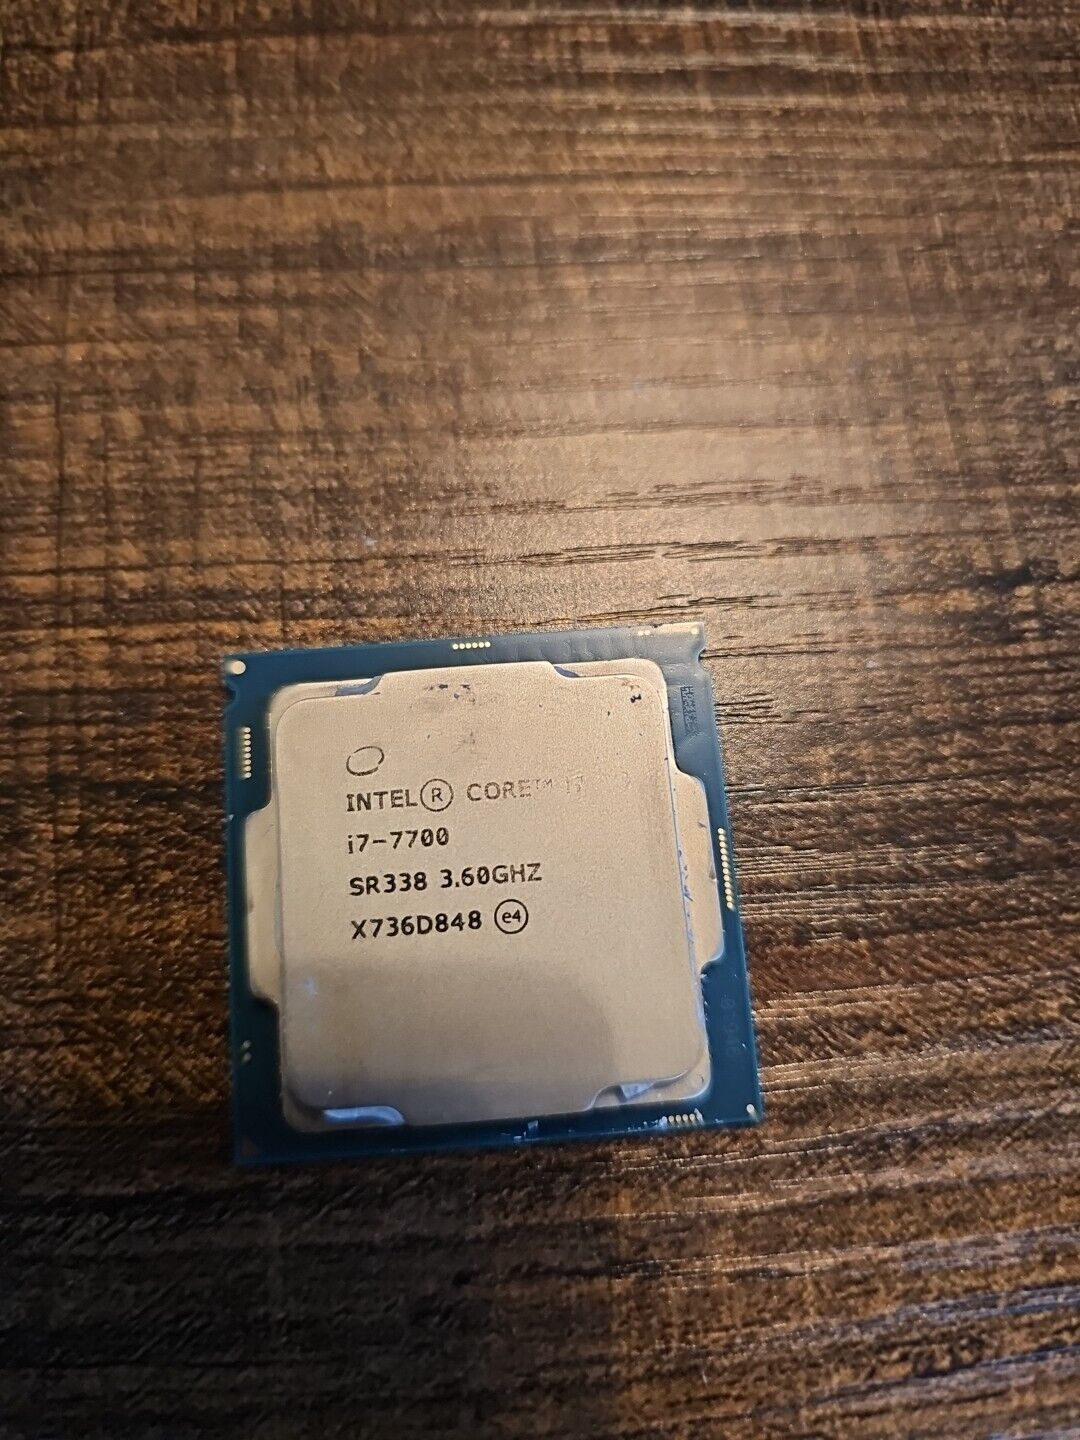 Intel Core I7 7700 Processor (3.60 GHz, 4 Cores, FCLGA1151) - SR338